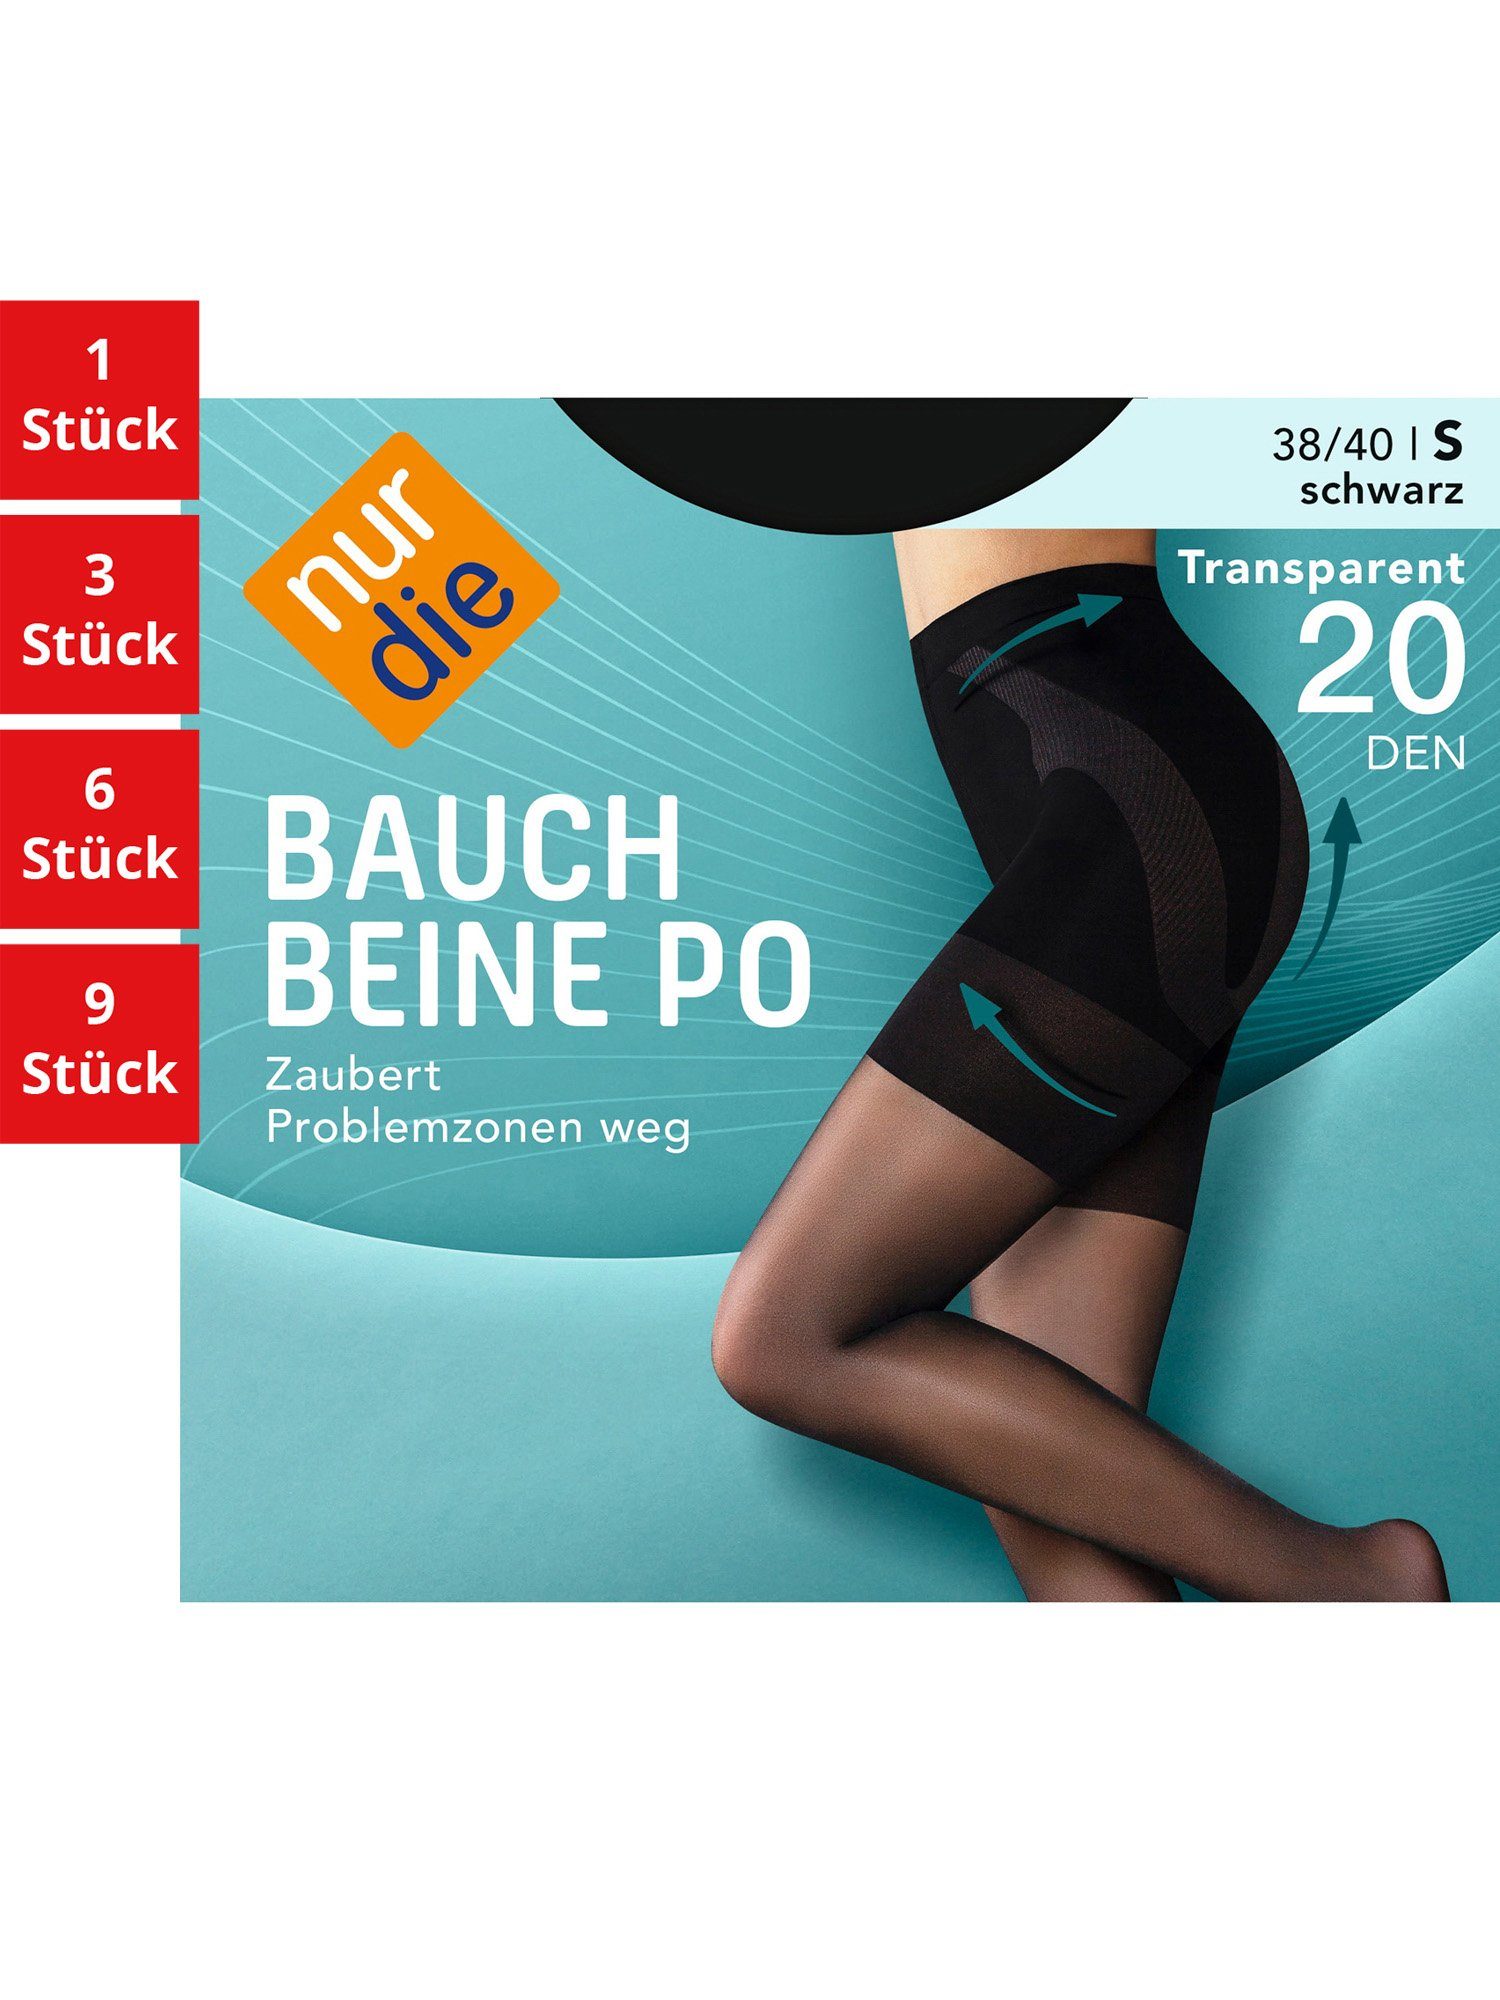 Nur Die Feinstrumpfhose Bauch-Beine-Po 20 DEN Damen (1er/3er/6er/9er Pack 1 St) nylon transparent Fein-strumpfhose durchsichtig frauen multi-pack schwarz